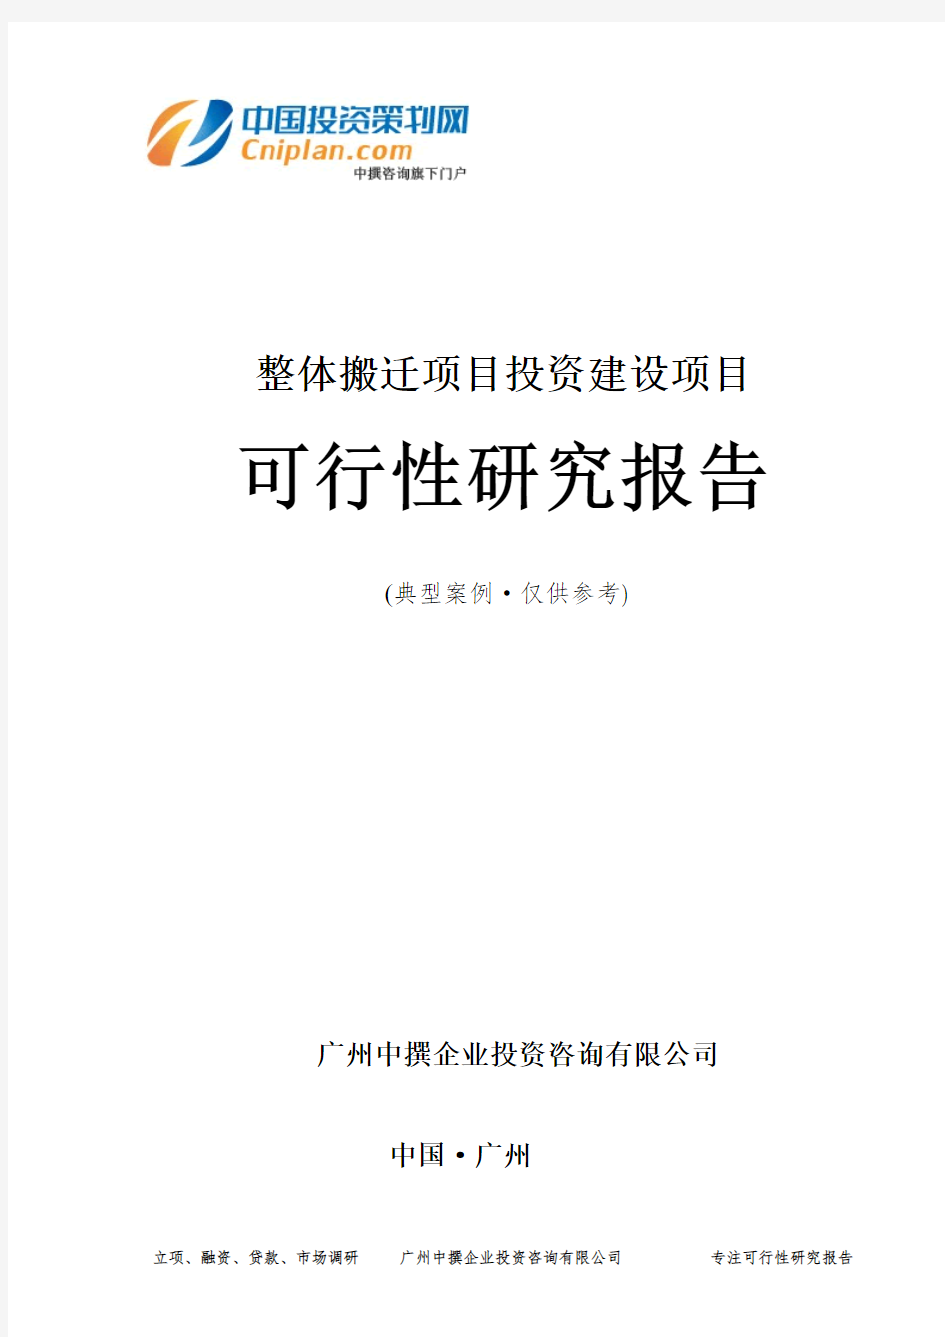 整体搬迁项目投资建设项目可行性研究报告-广州中撰咨询